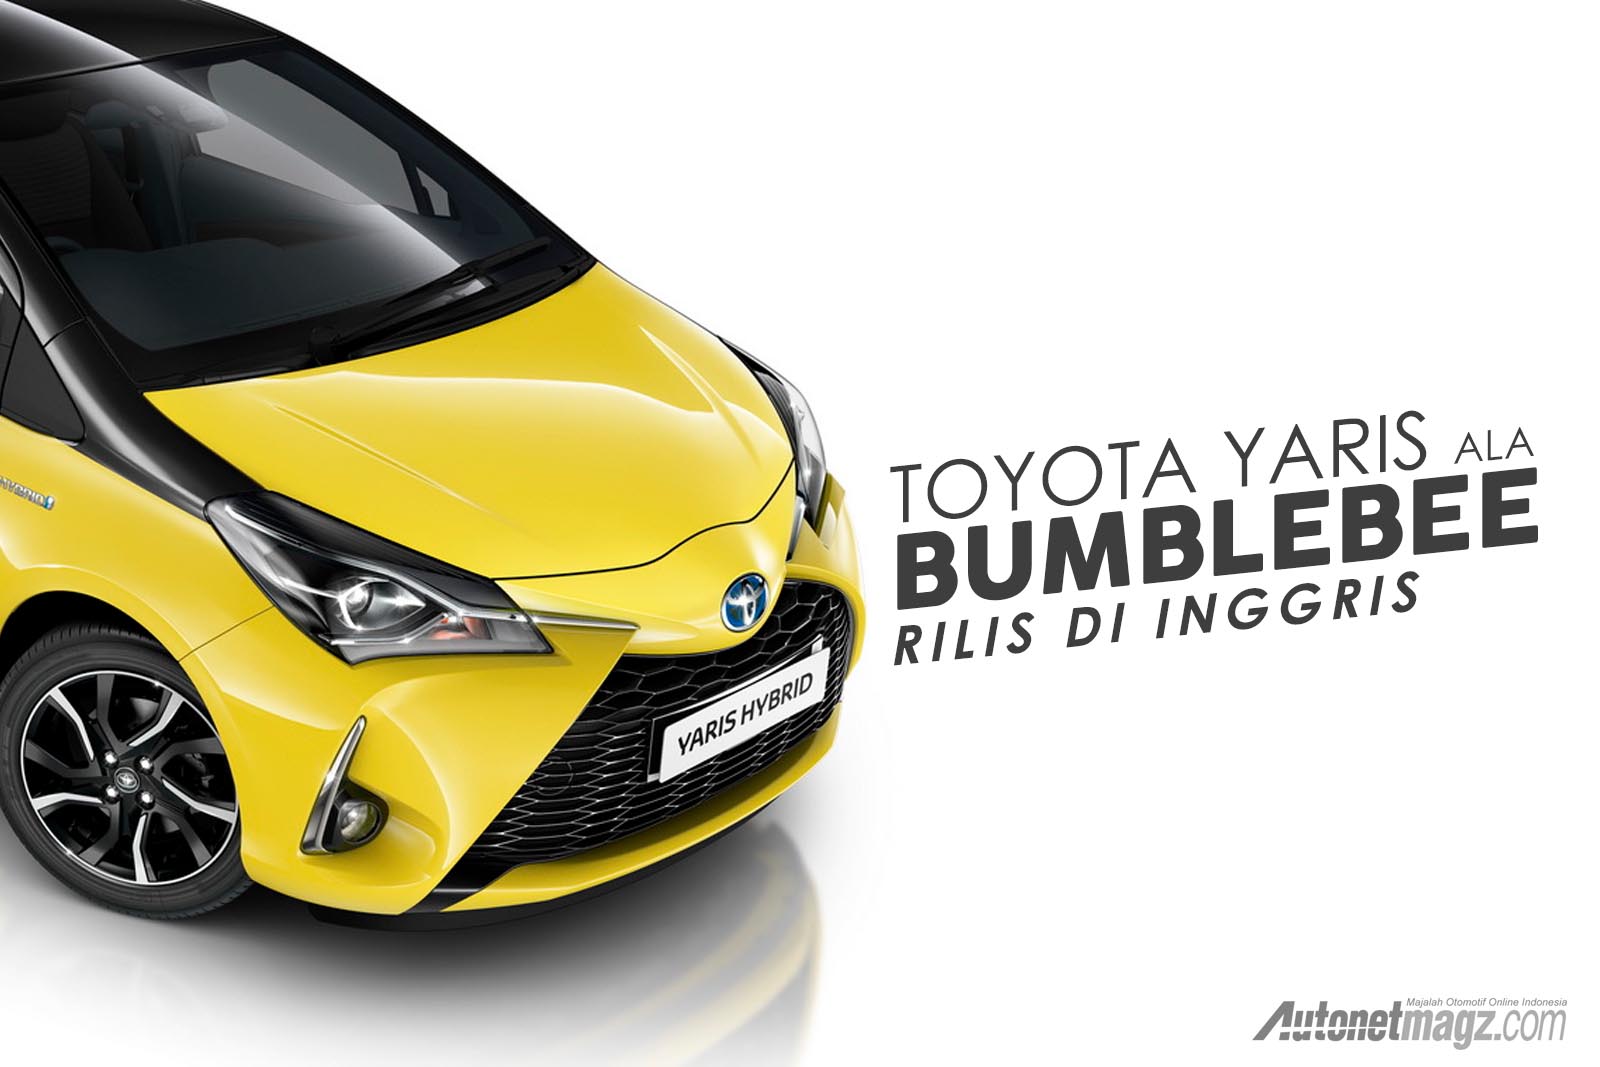 Berita, YARIS BUMBLEBEE: Toyota Yaris Berkelir Bumblebee Dirilis Di Inggris